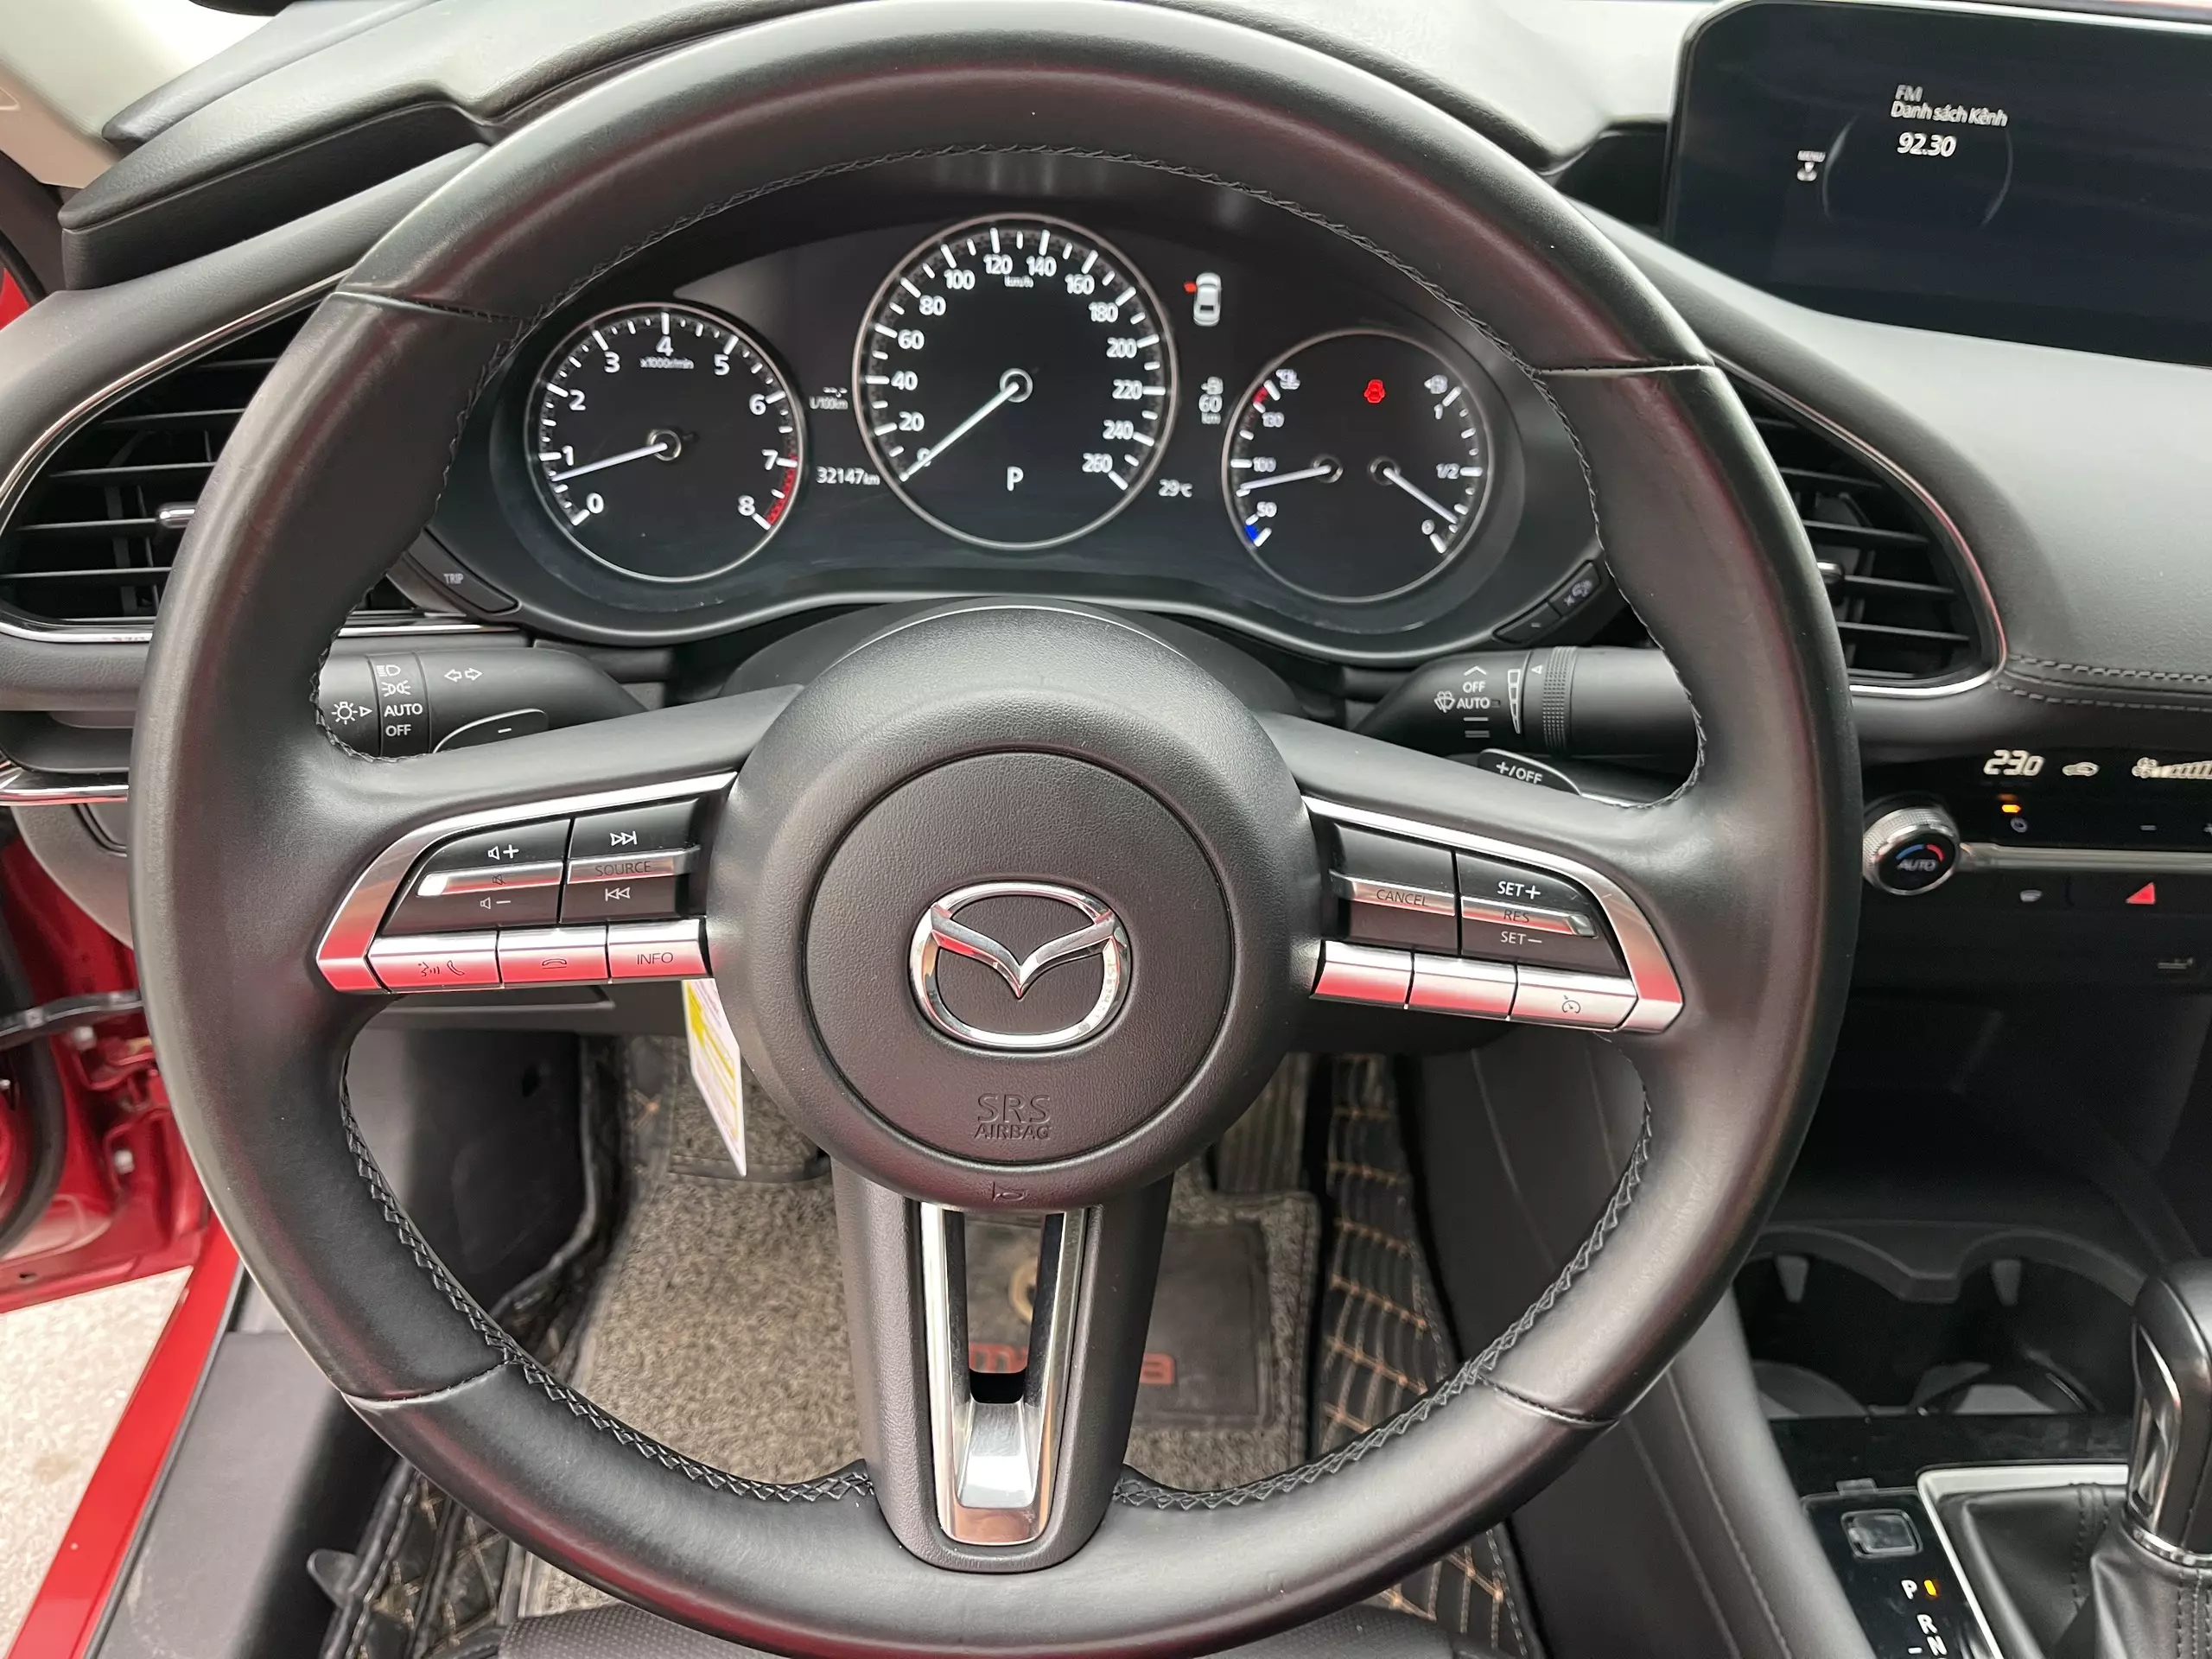 Chính chủ cần bán xe Mazda 3-1.5 luxury đỏ phale -7